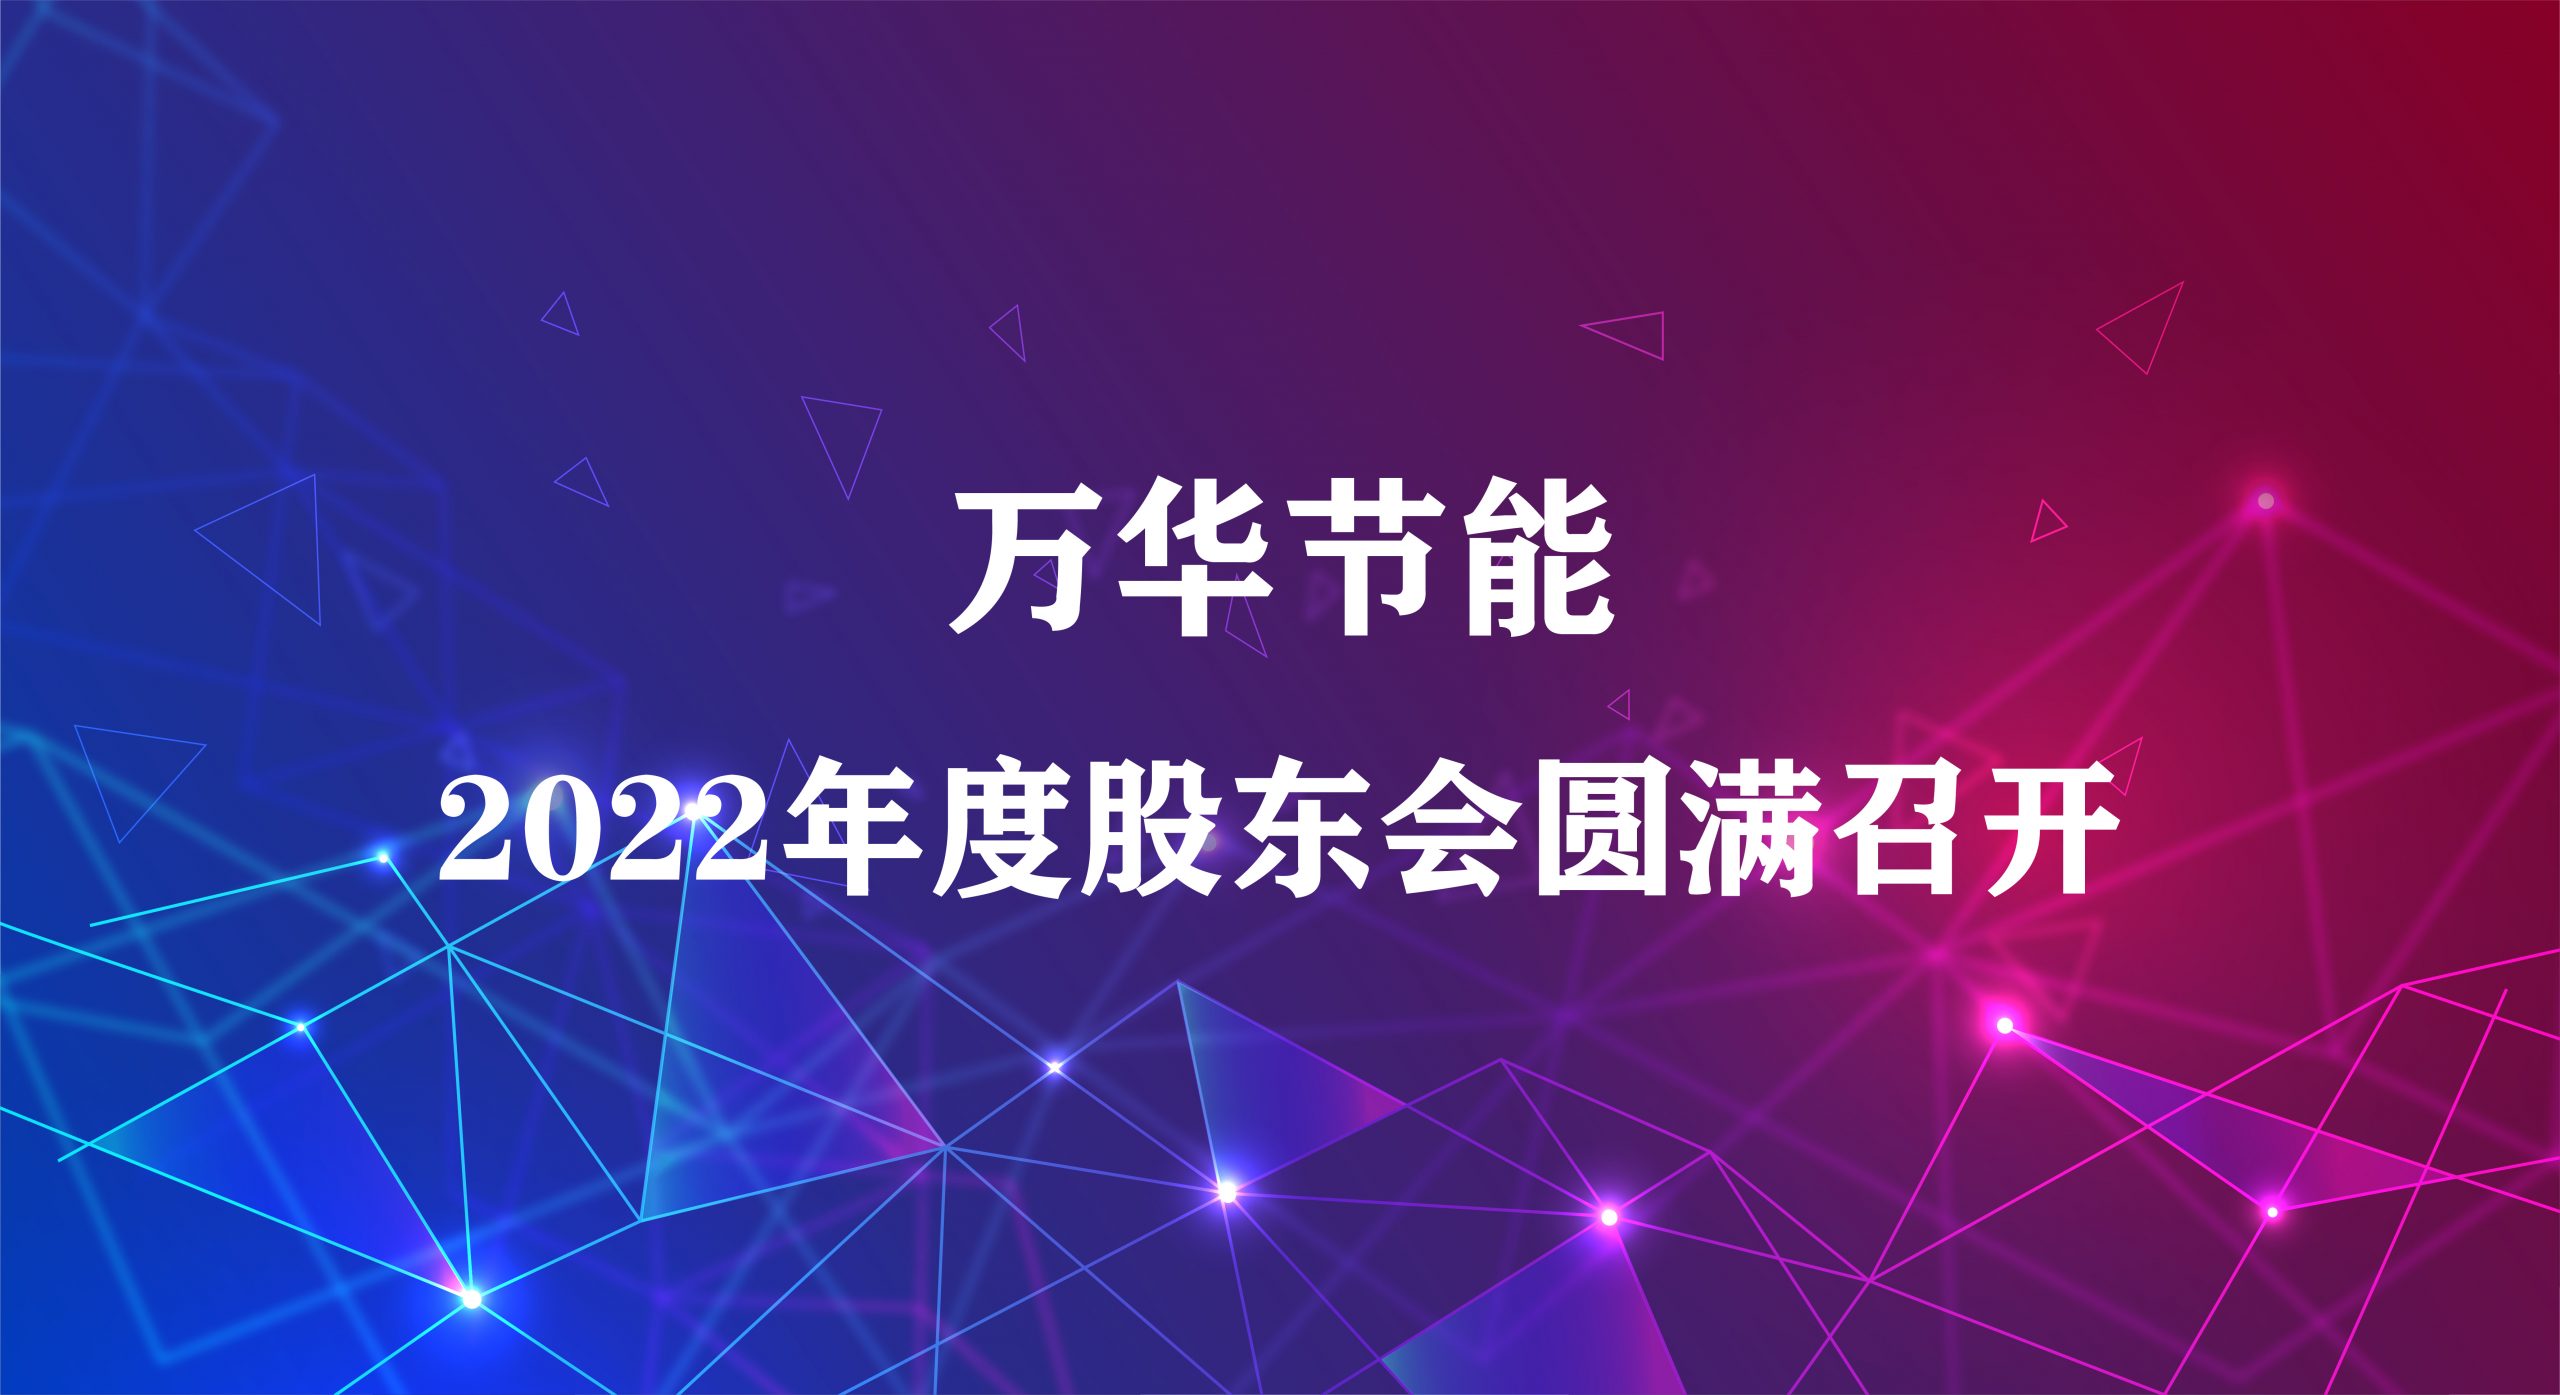 万华节能(néng)集团2022年年度股东大会圆满召开